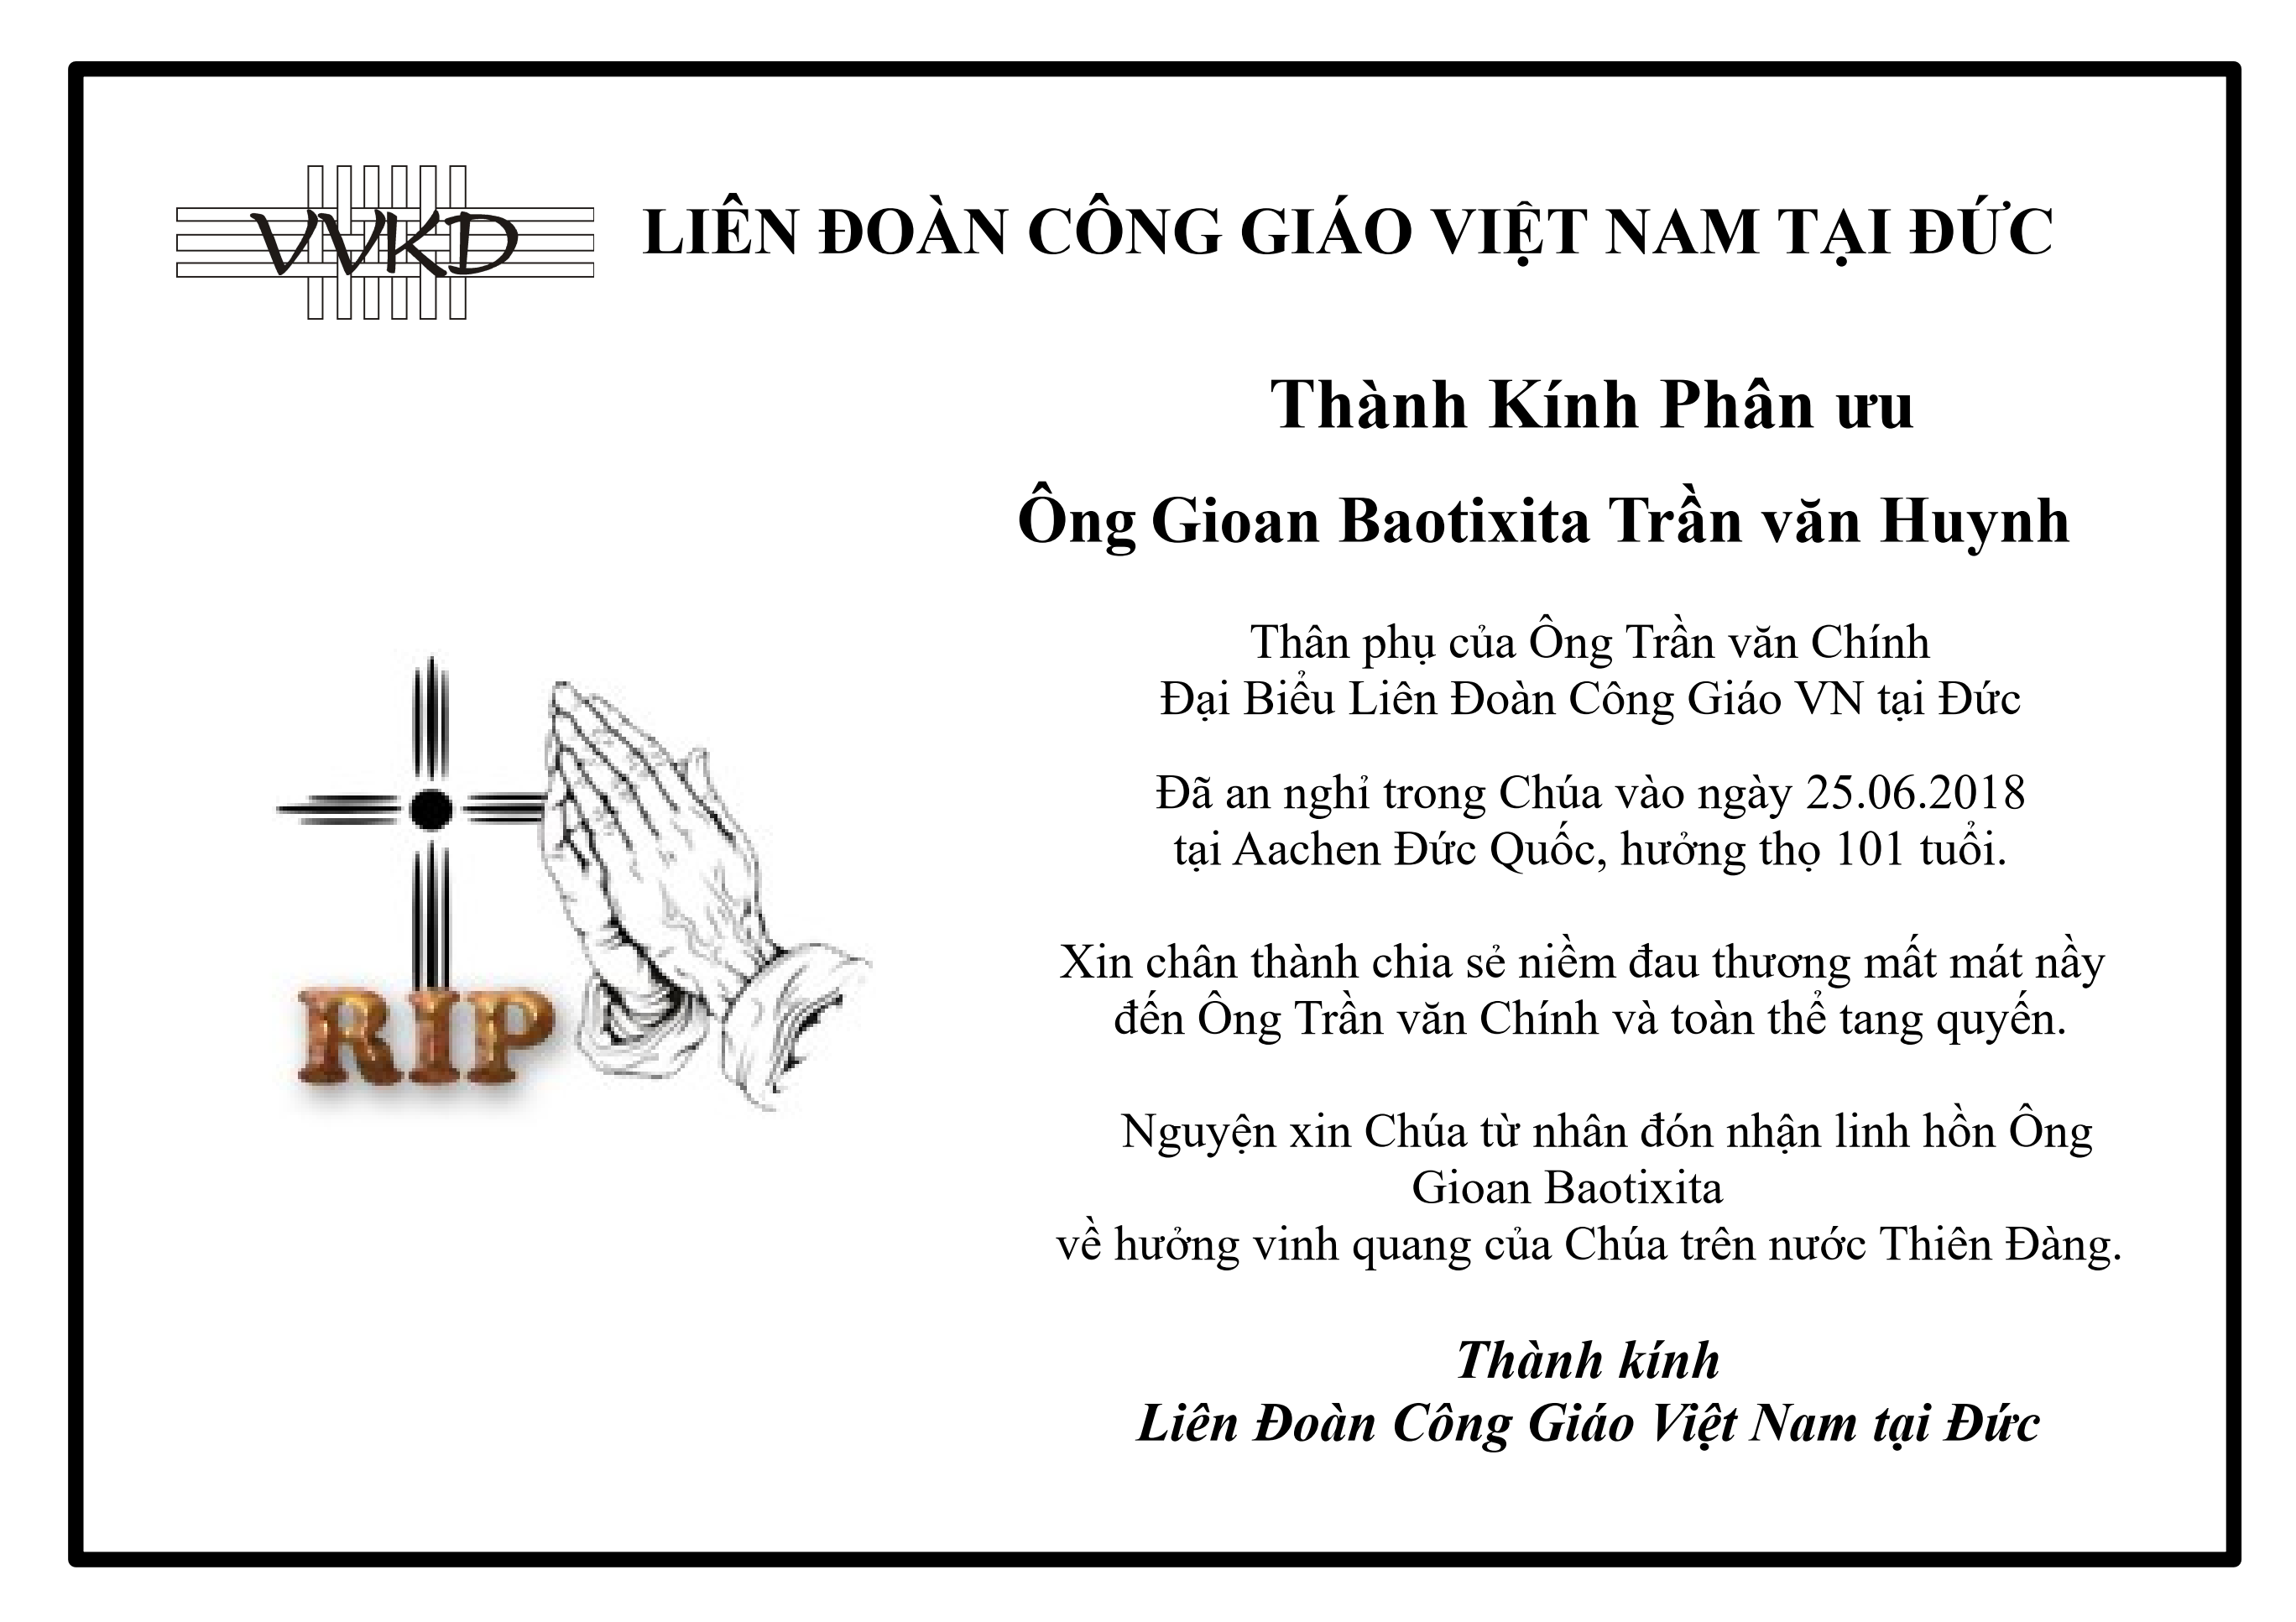 Phan Uu Than Phu Ong Tran Van Chinh